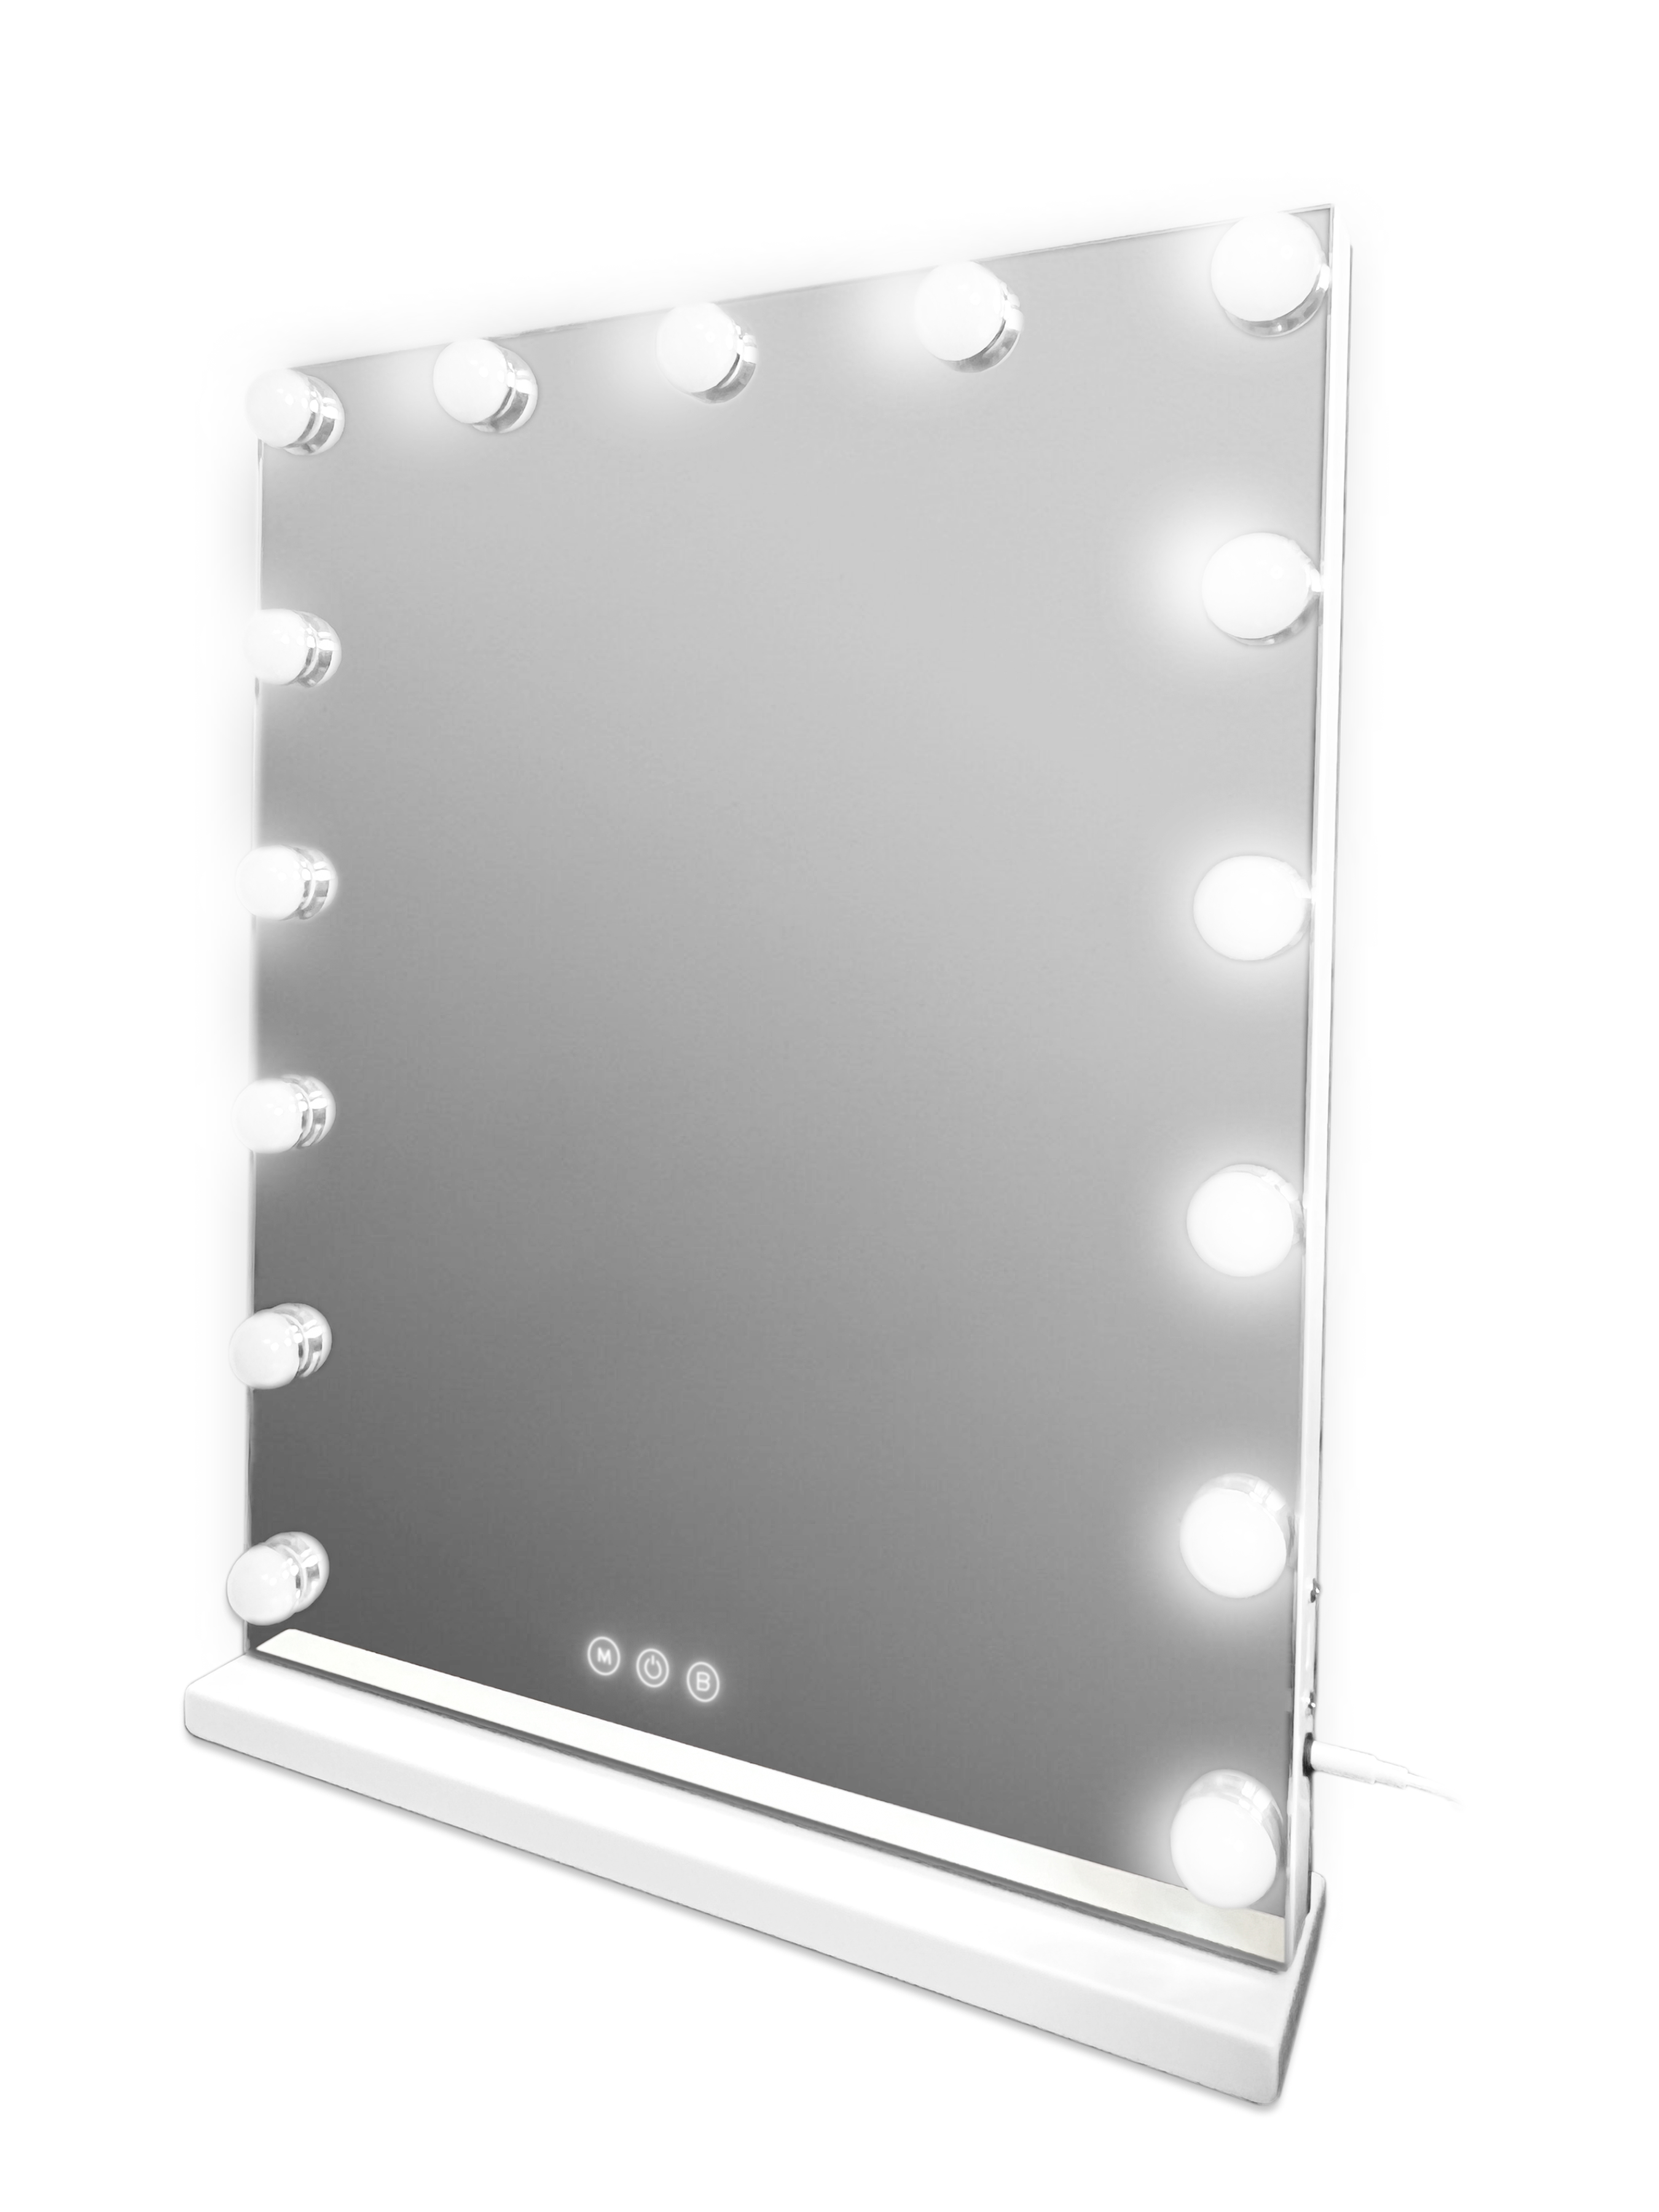 Профессиональное настольное зеркало с подсветкой FENCHILIN DC117-16, 58х46 см